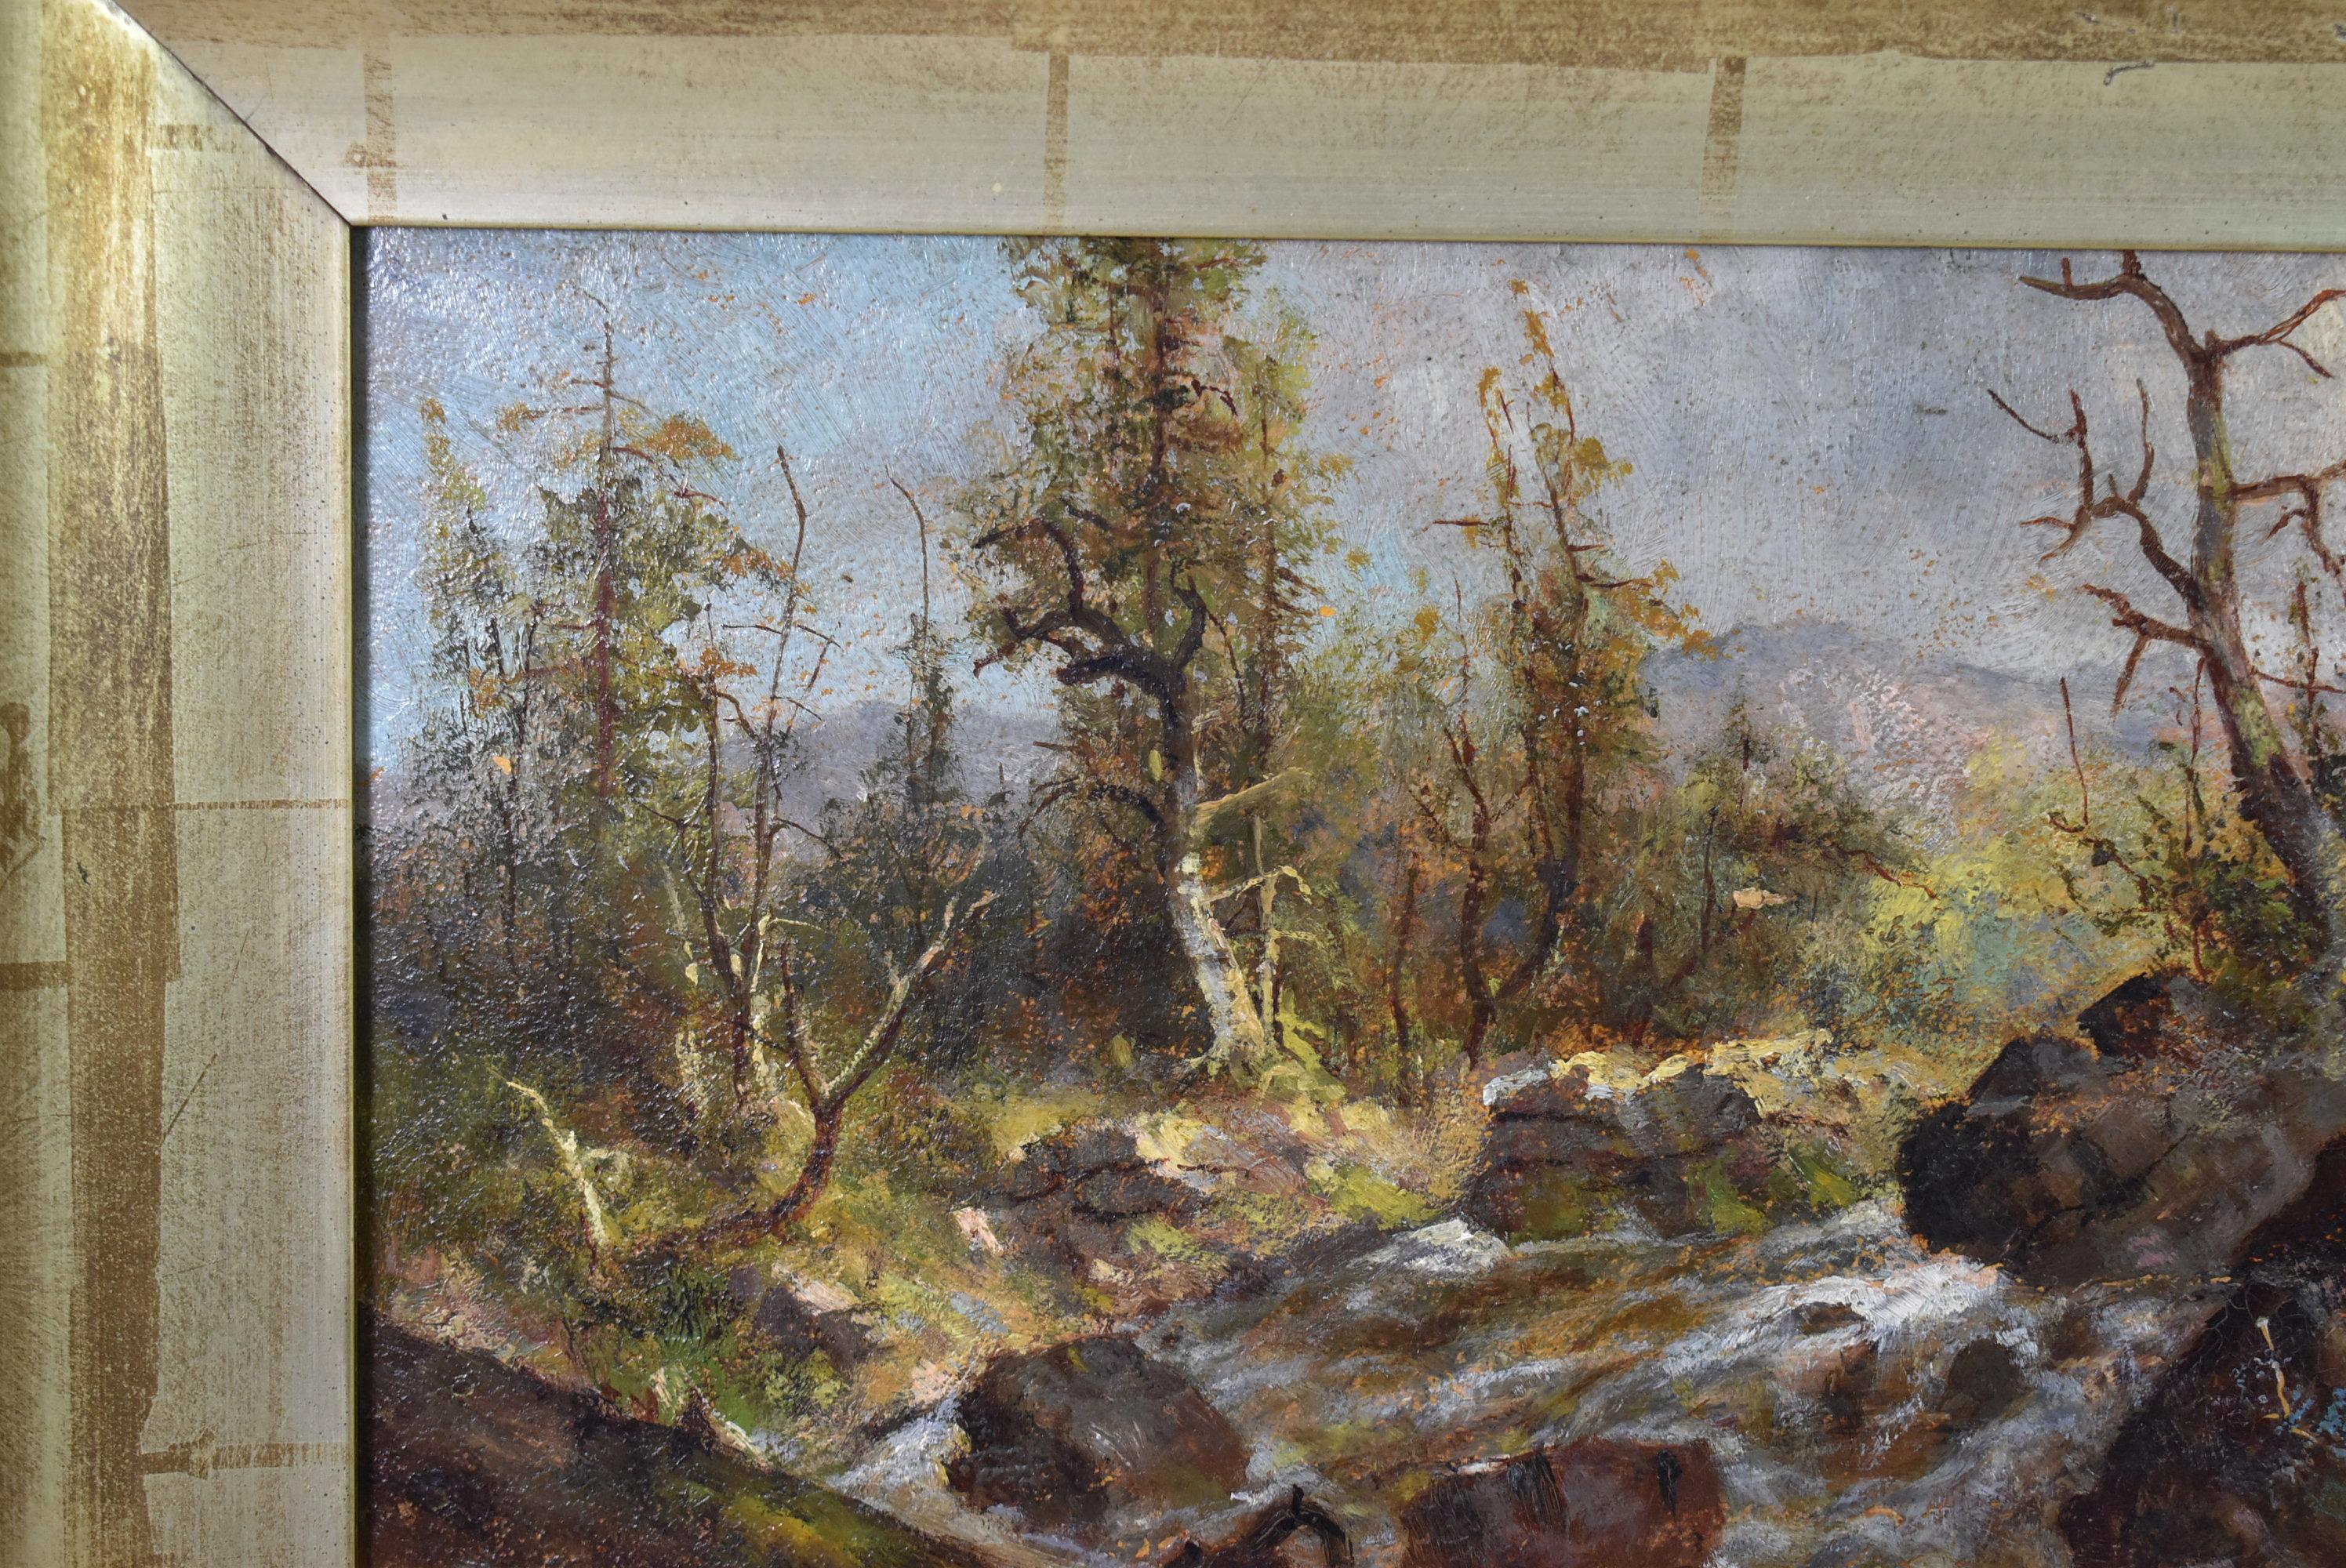 Paysage montagneux avec ruisseau par l'artiste californien Meyer Straus 1831- 1905. Straus est né en Allemagne. Il a déménagé aux États-Unis et a vécu dans plusieurs États. A déménagé à la Nouvelle-Orléans à l'âge de 41 ans. Il a terminé la dernière